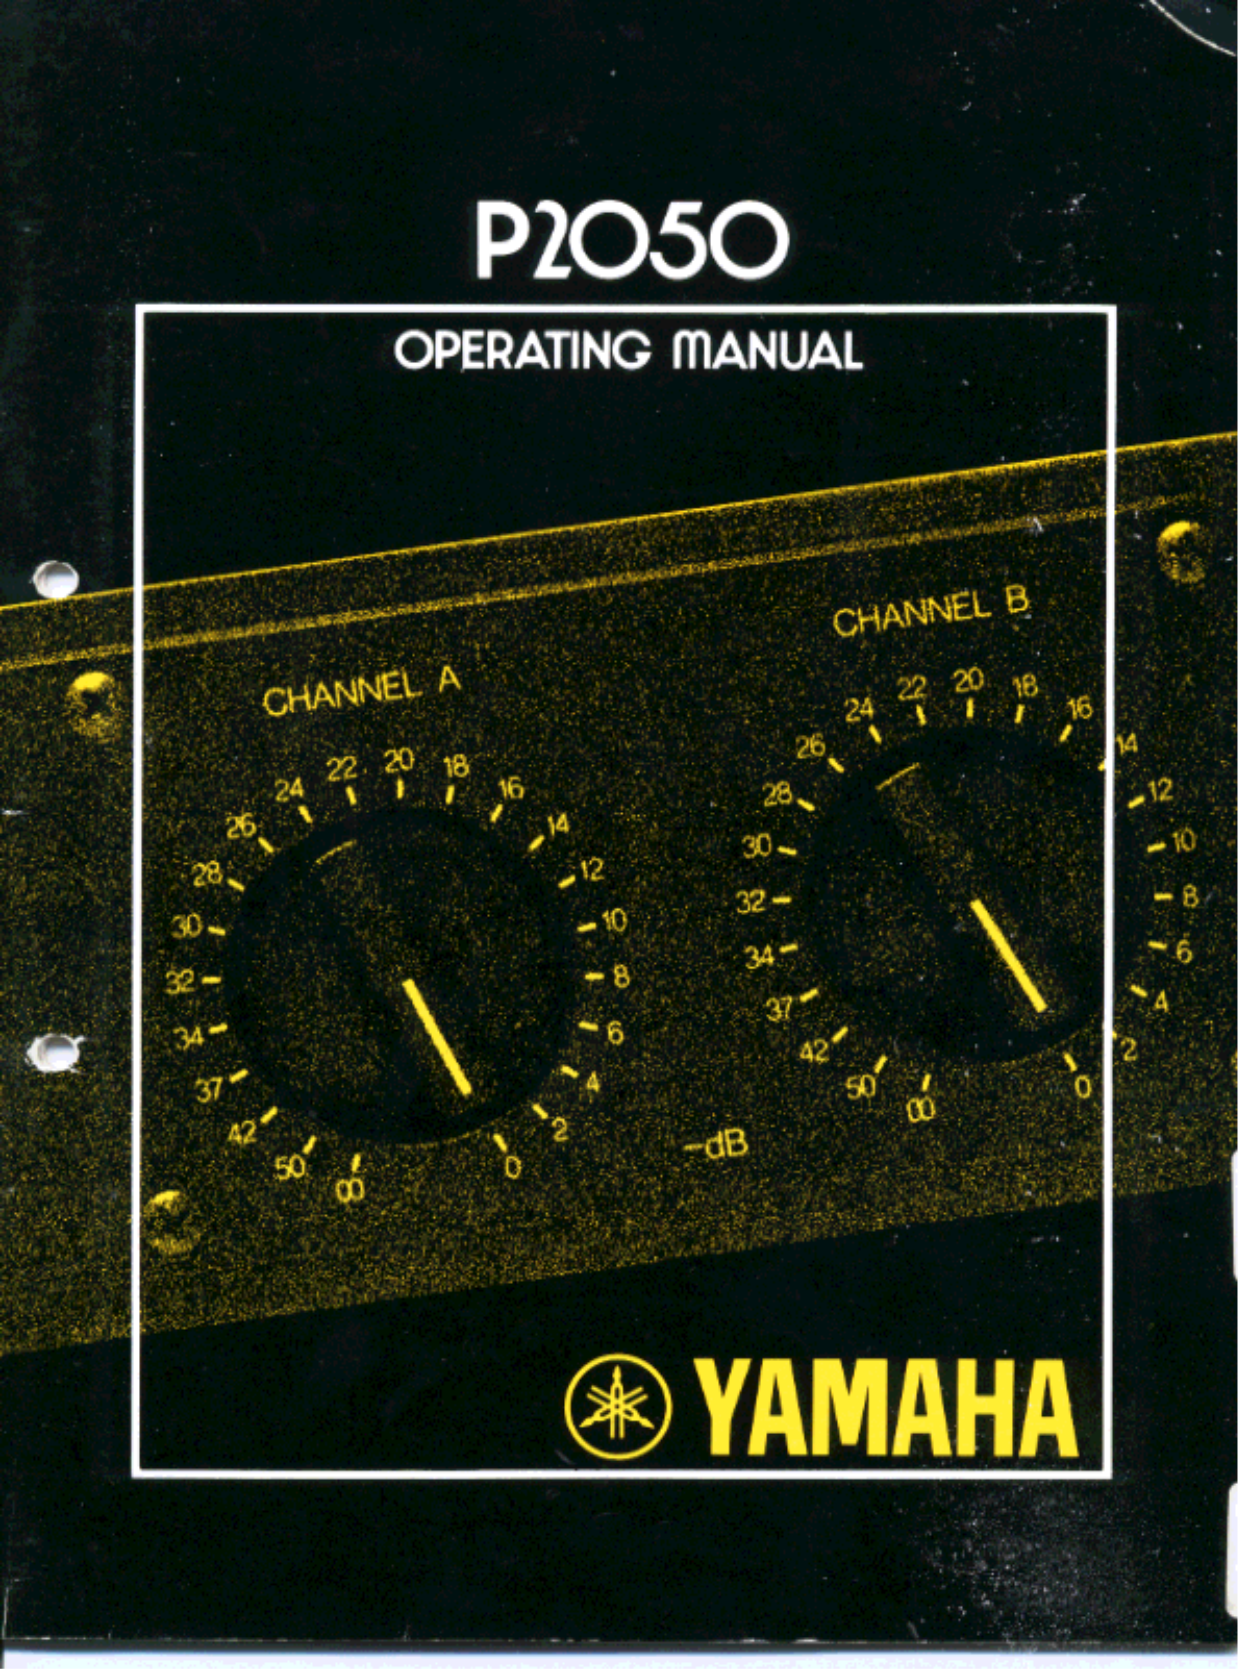 Download free pdf for Yamaha P2050 Amp manual